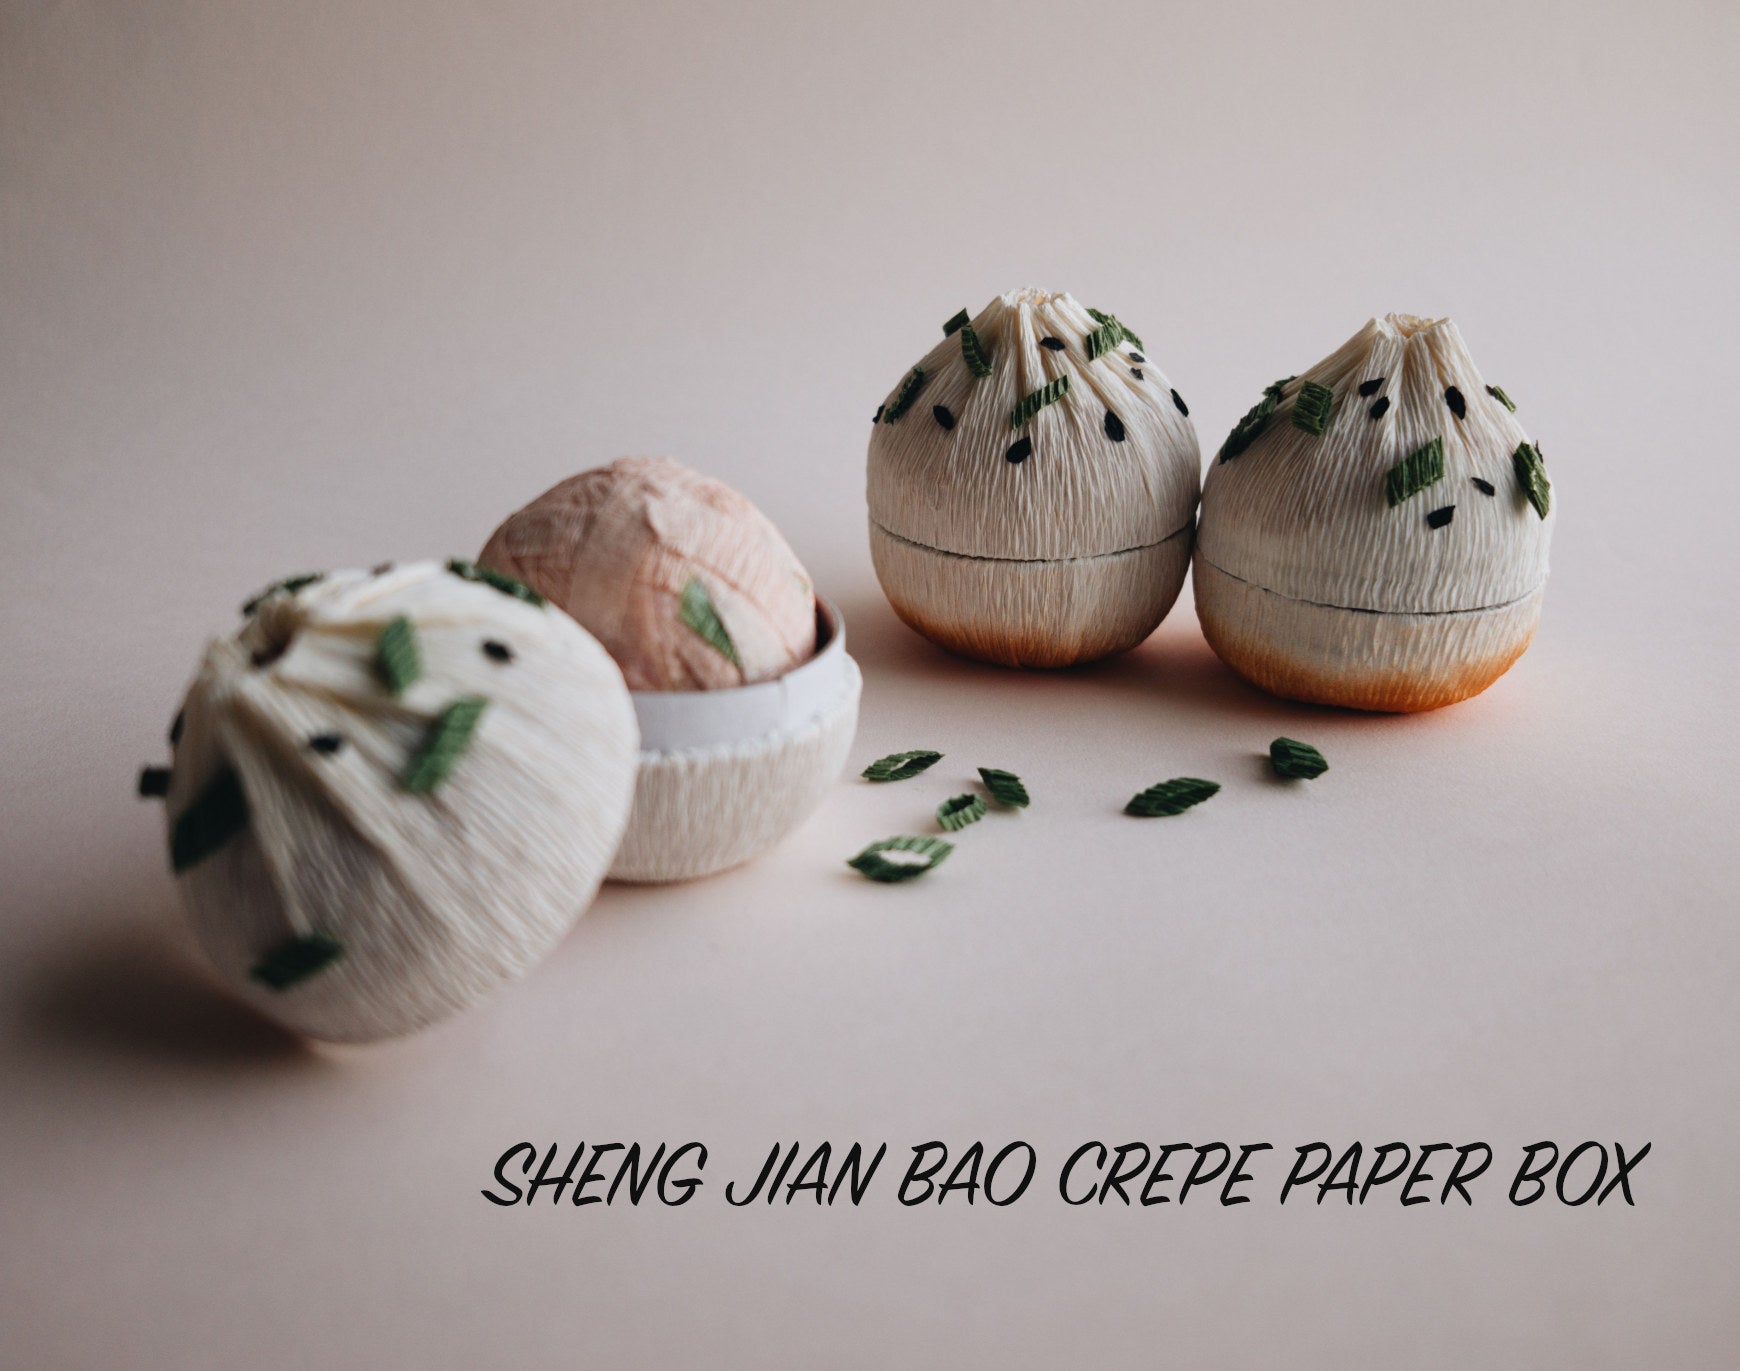 SHENG JIAN BAO CREPE PAPER BOX diy